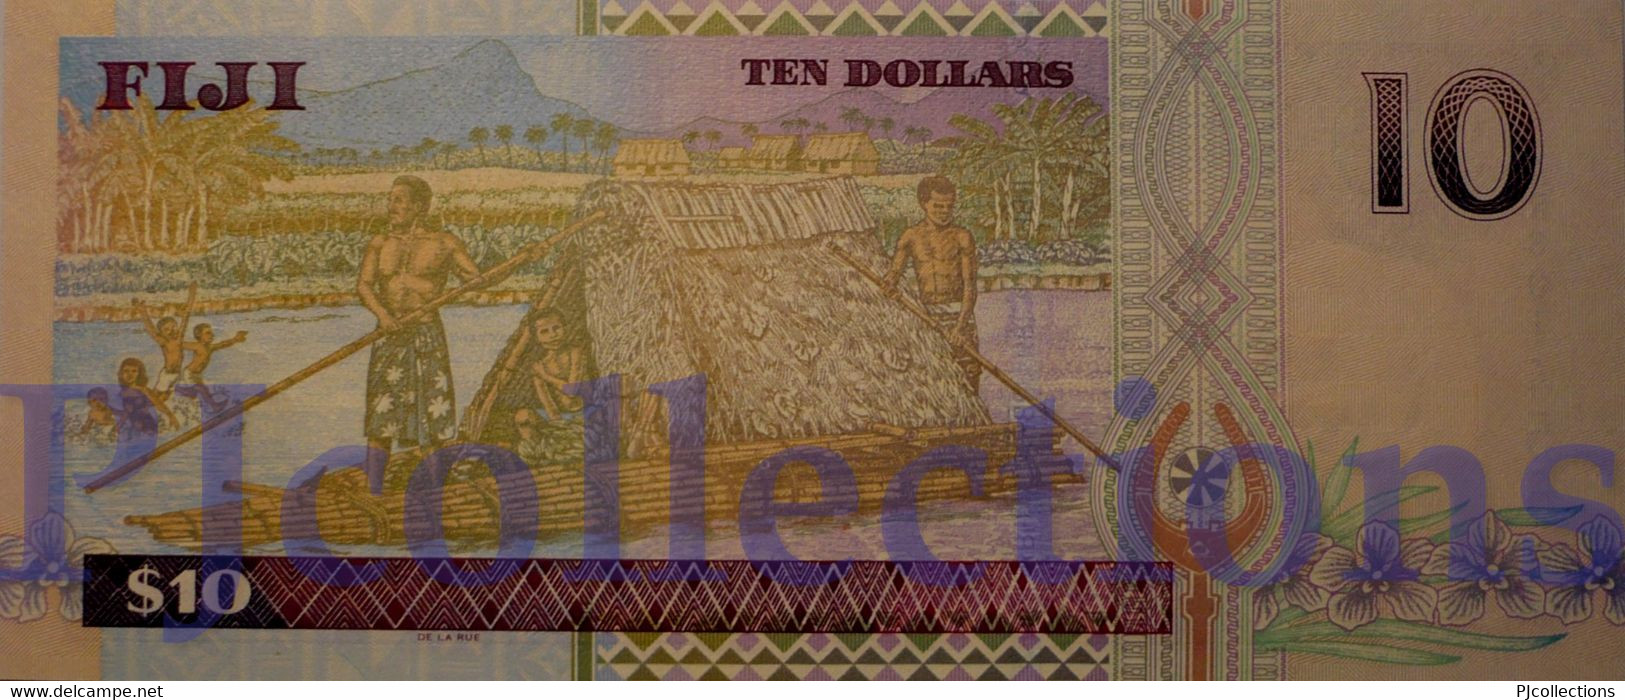 FIJI 10 DOLLARS 2002 PICK 106a UNC - Fiji